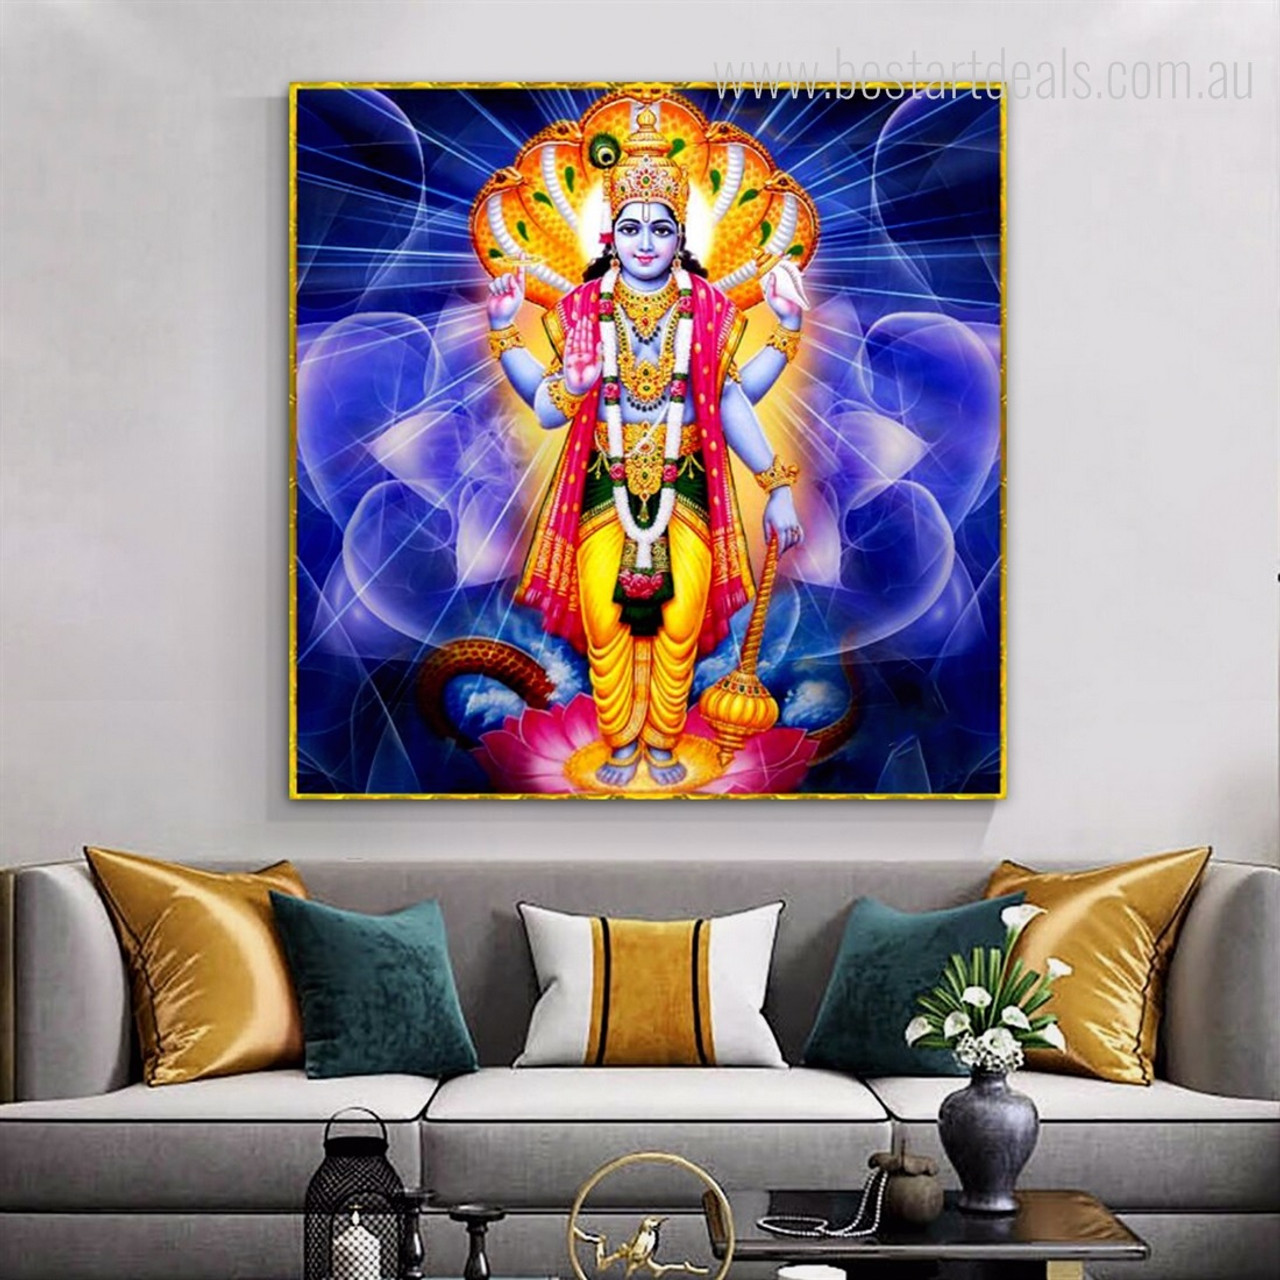 Bhagwan Vishnu HD Wallpaper Download | Lord Vishnu Photos | Vishnu Bhagwan  Images | Bhagwan Vishnu Vectors